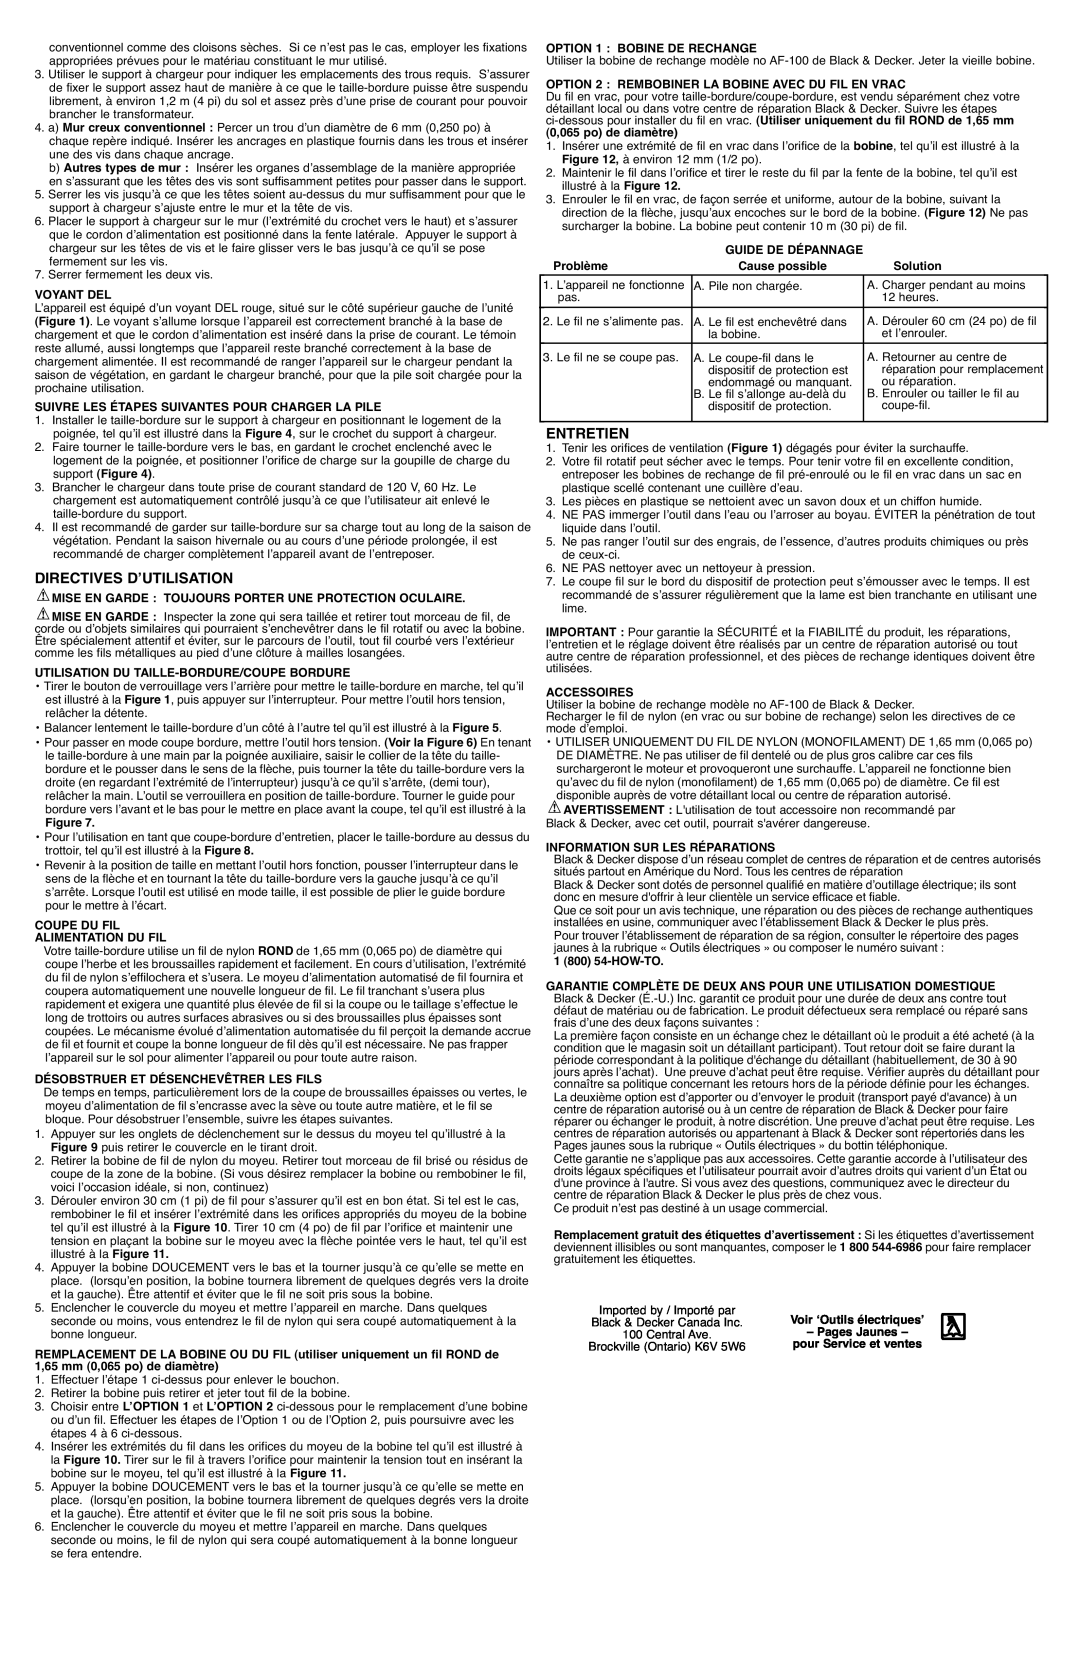 Black & Decker CST1200R instruction manual Directives D’Utilisation, Entretien 